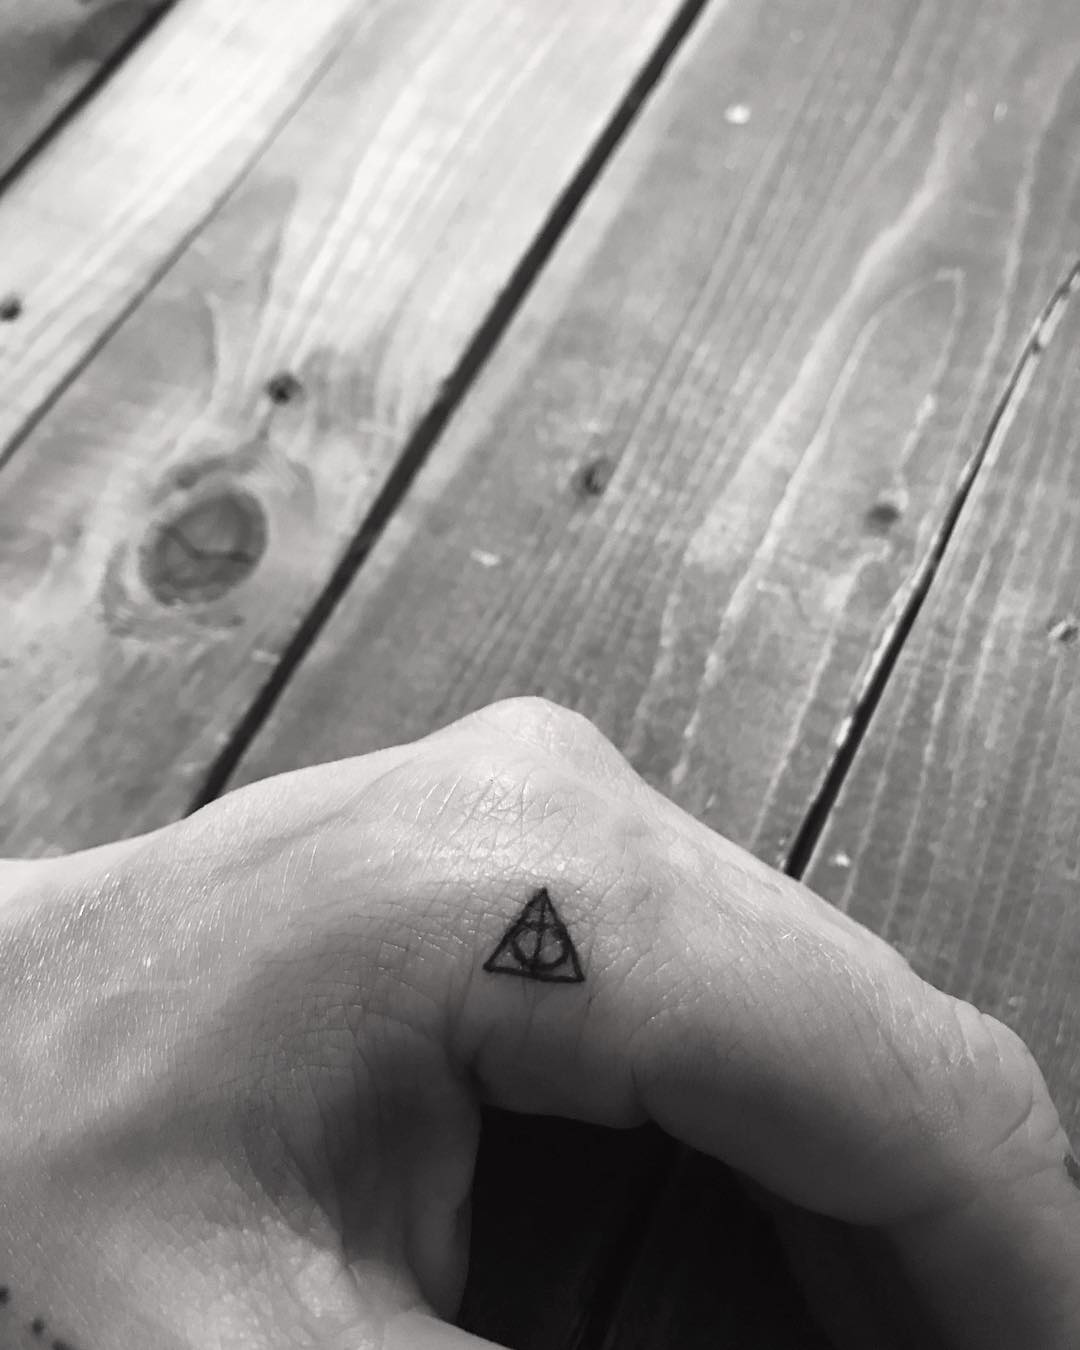 Miniature Harry Potter Death Hallow Tattoo On Finger